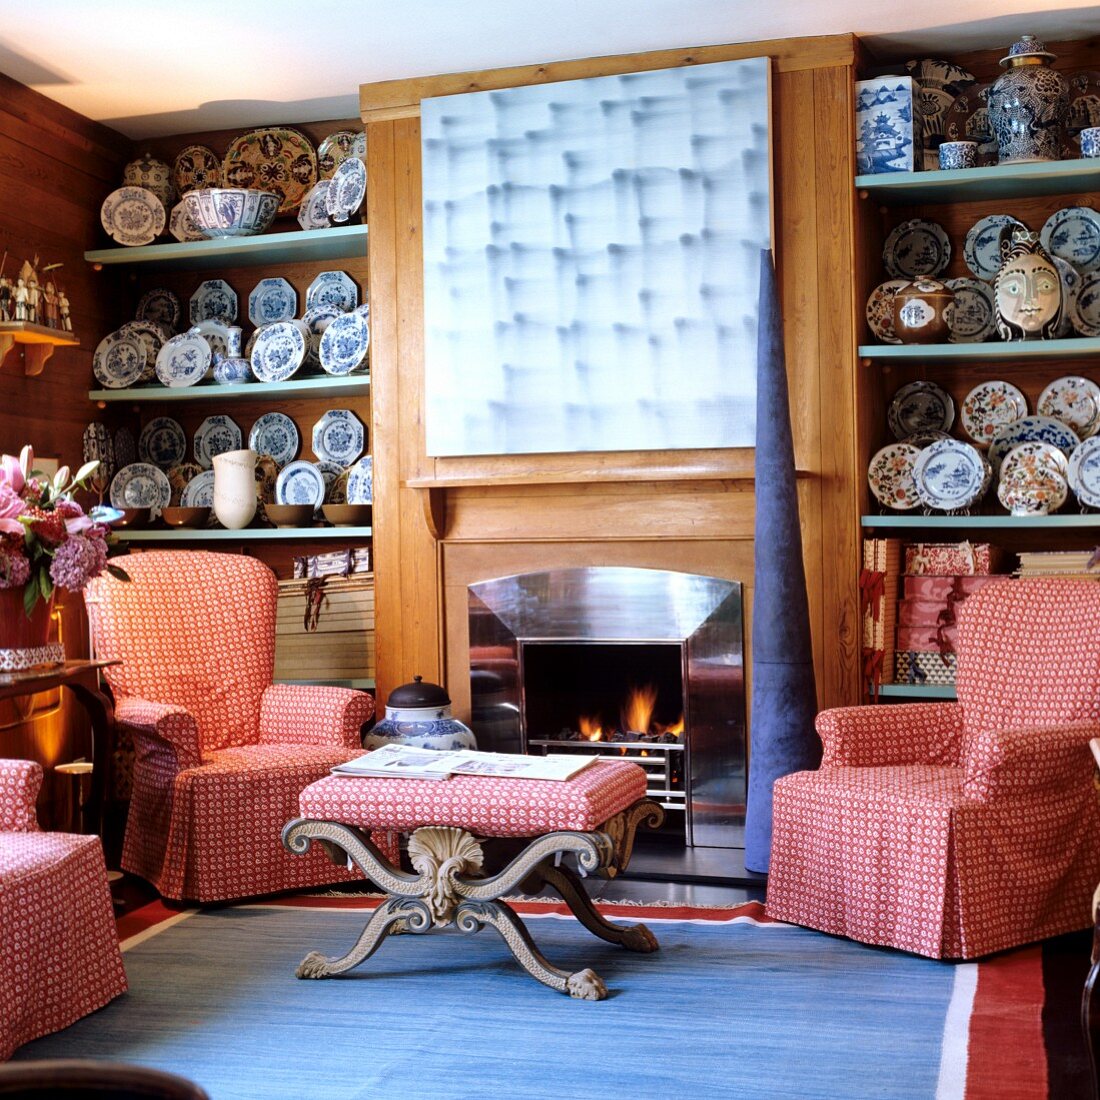 Traditionelle Wohnzimmerecke - Sessel mit karierter Husse und passendem Couchtisch vor Kamin zwischen Regalen mit bemalten Wandtellern